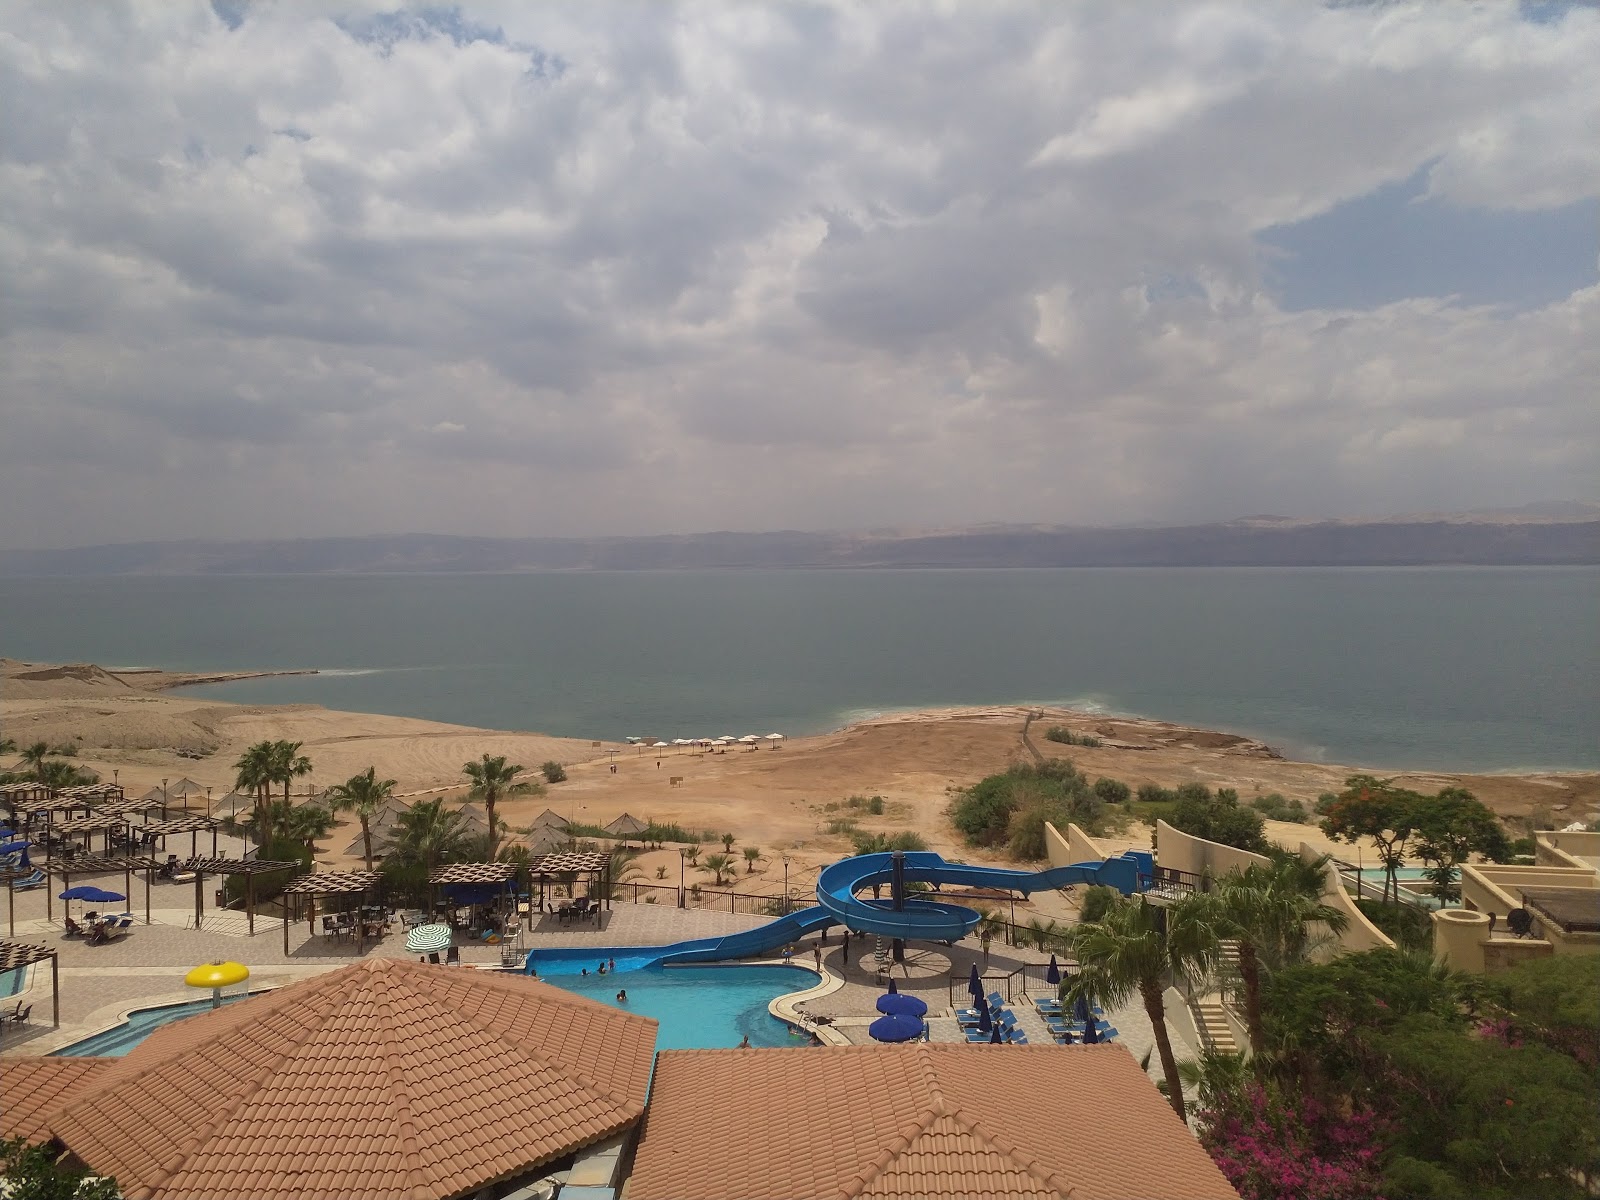 Zdjęcie Dead Sea Beach - popularne miejsce wśród znawców relaksu